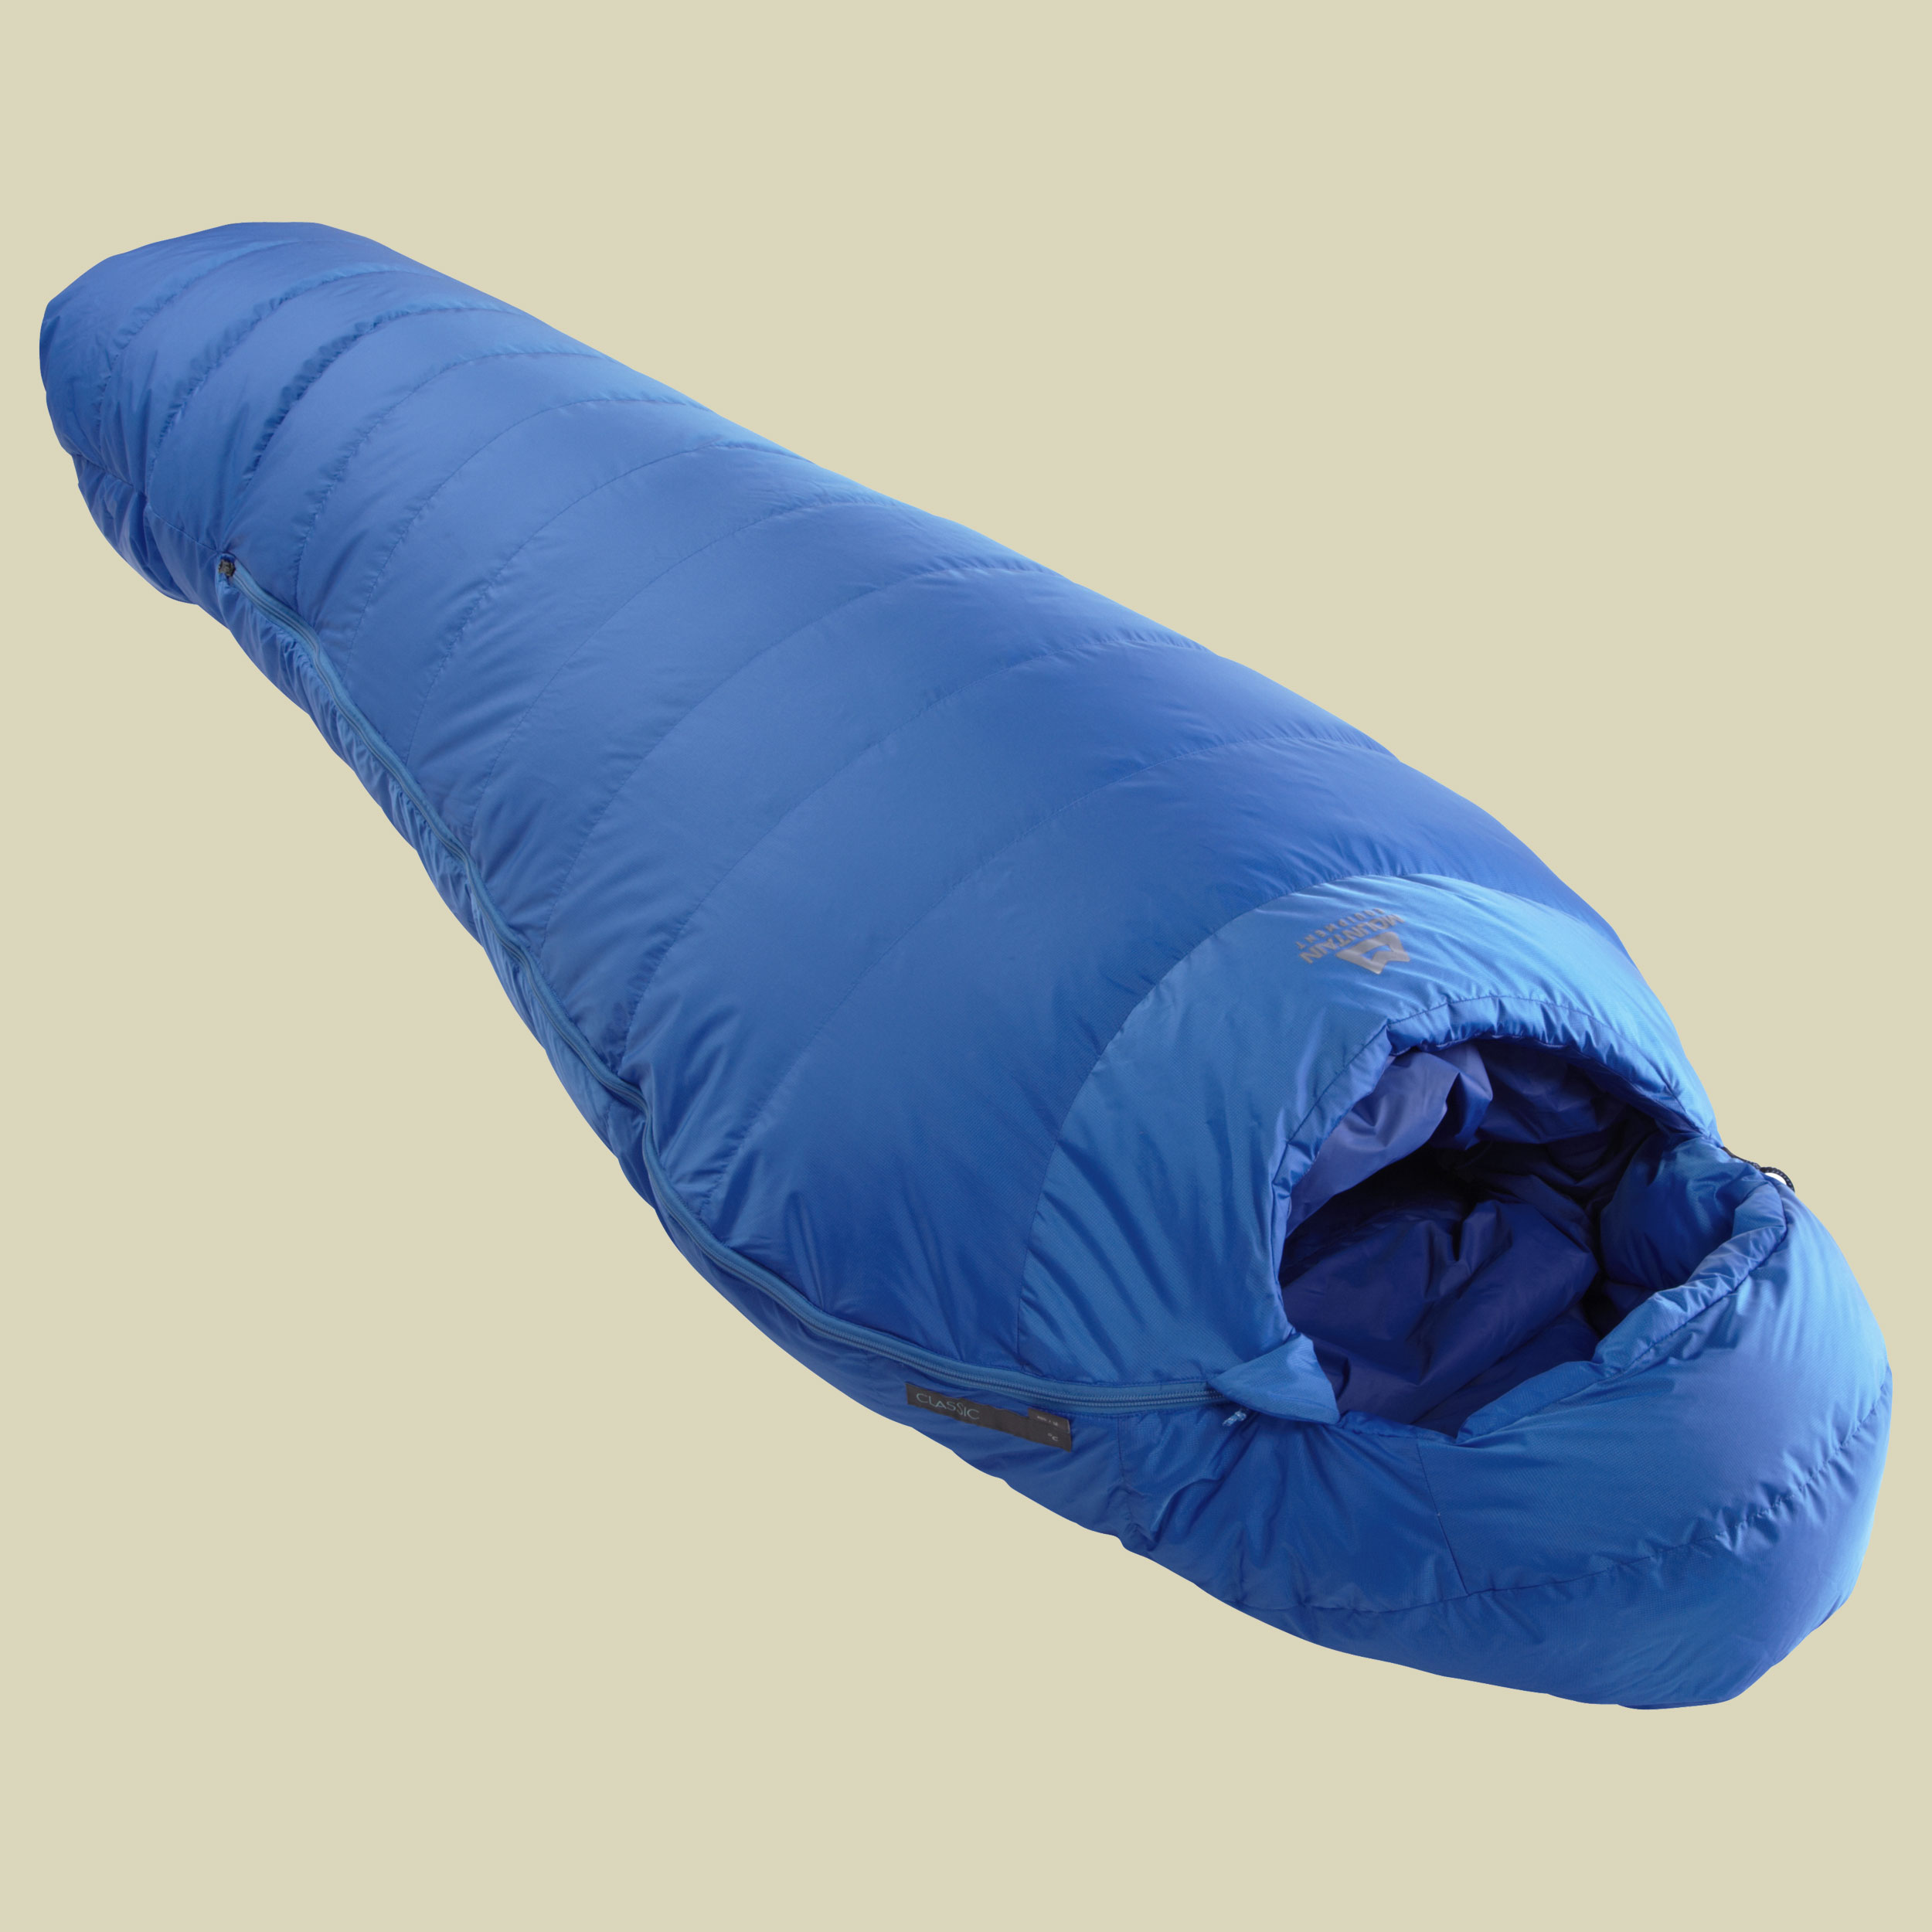 Classic 300 bis Körpergröße Schlafsack 185 cm Farbe skydiver, Reißverschluss Schlafsack rechts